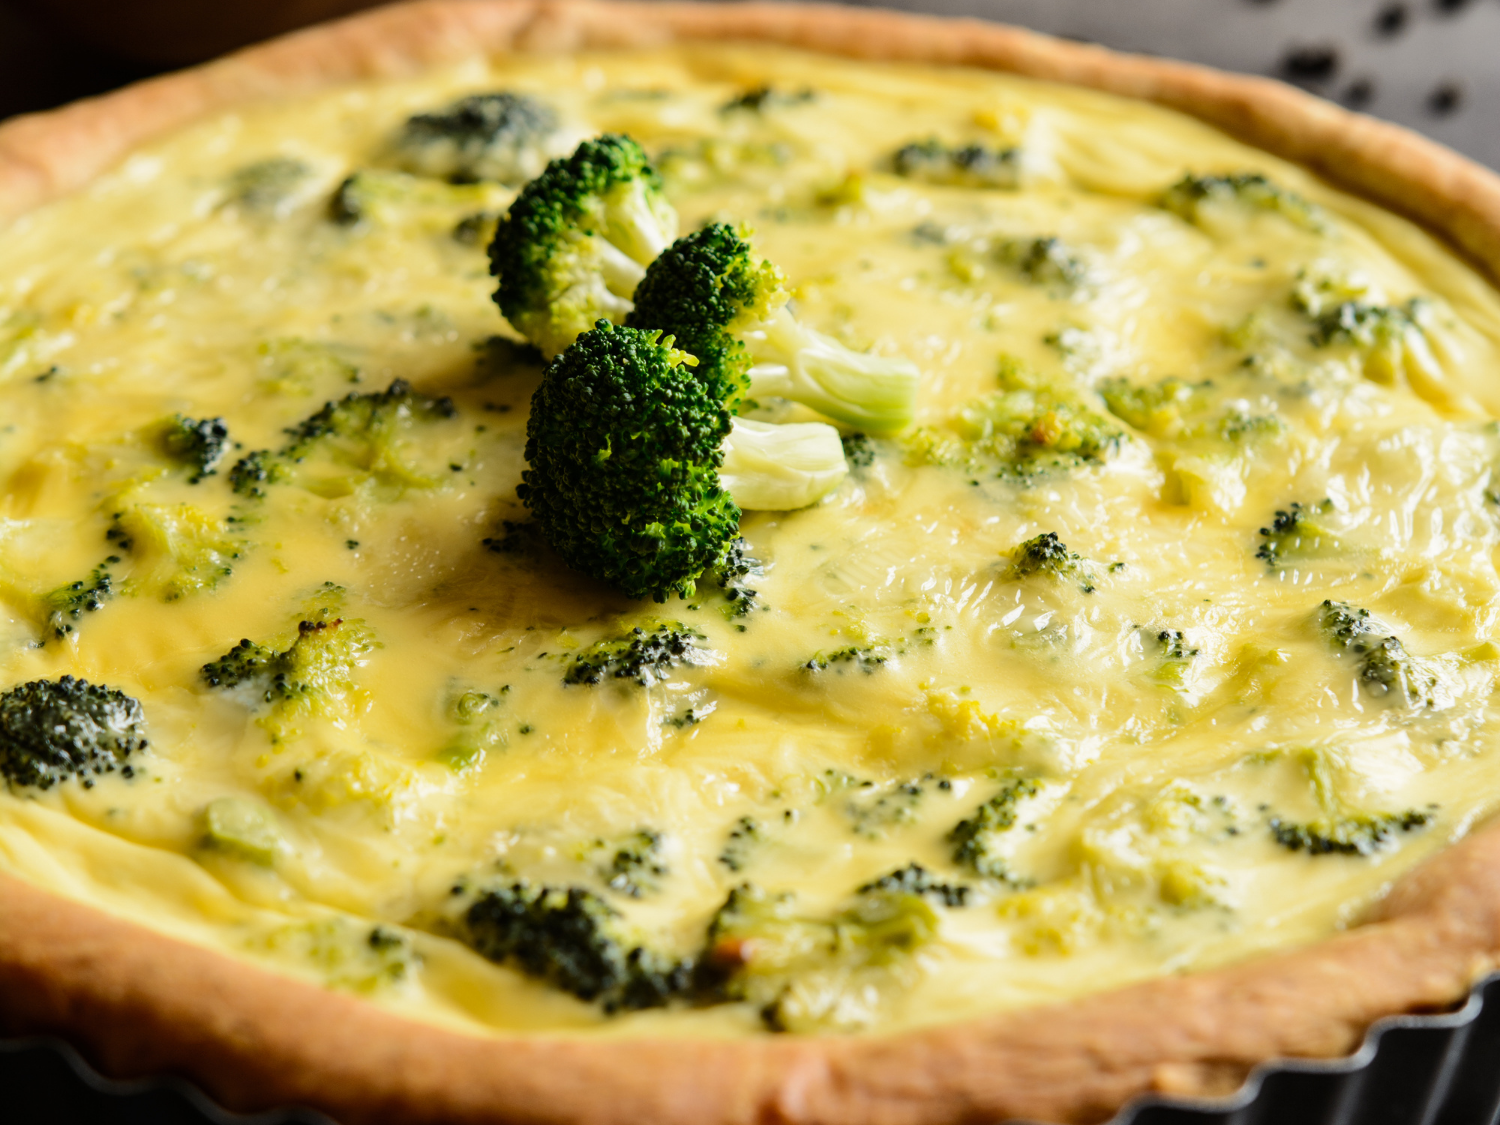 Broccoli and Cheese Quiche